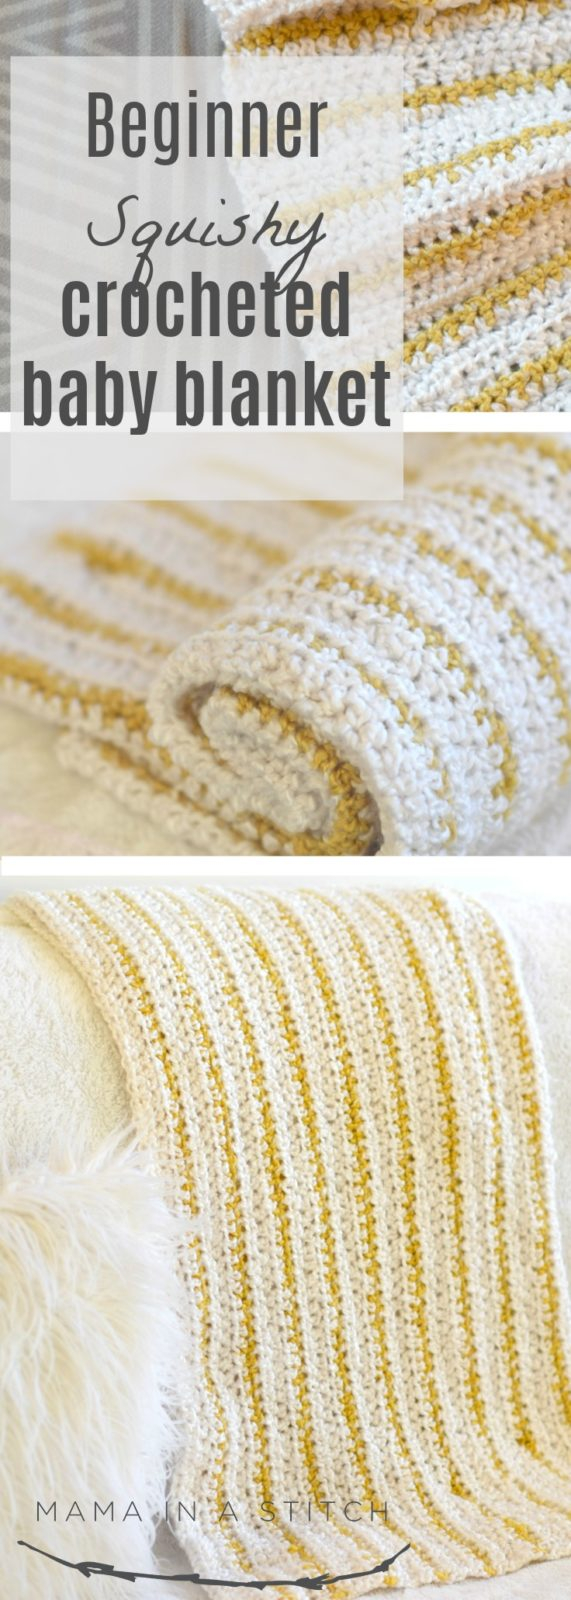 Beginner Crochet Blanket Patterns Soft Beginner Crochet Blanket Pattern Mama In A Stitch